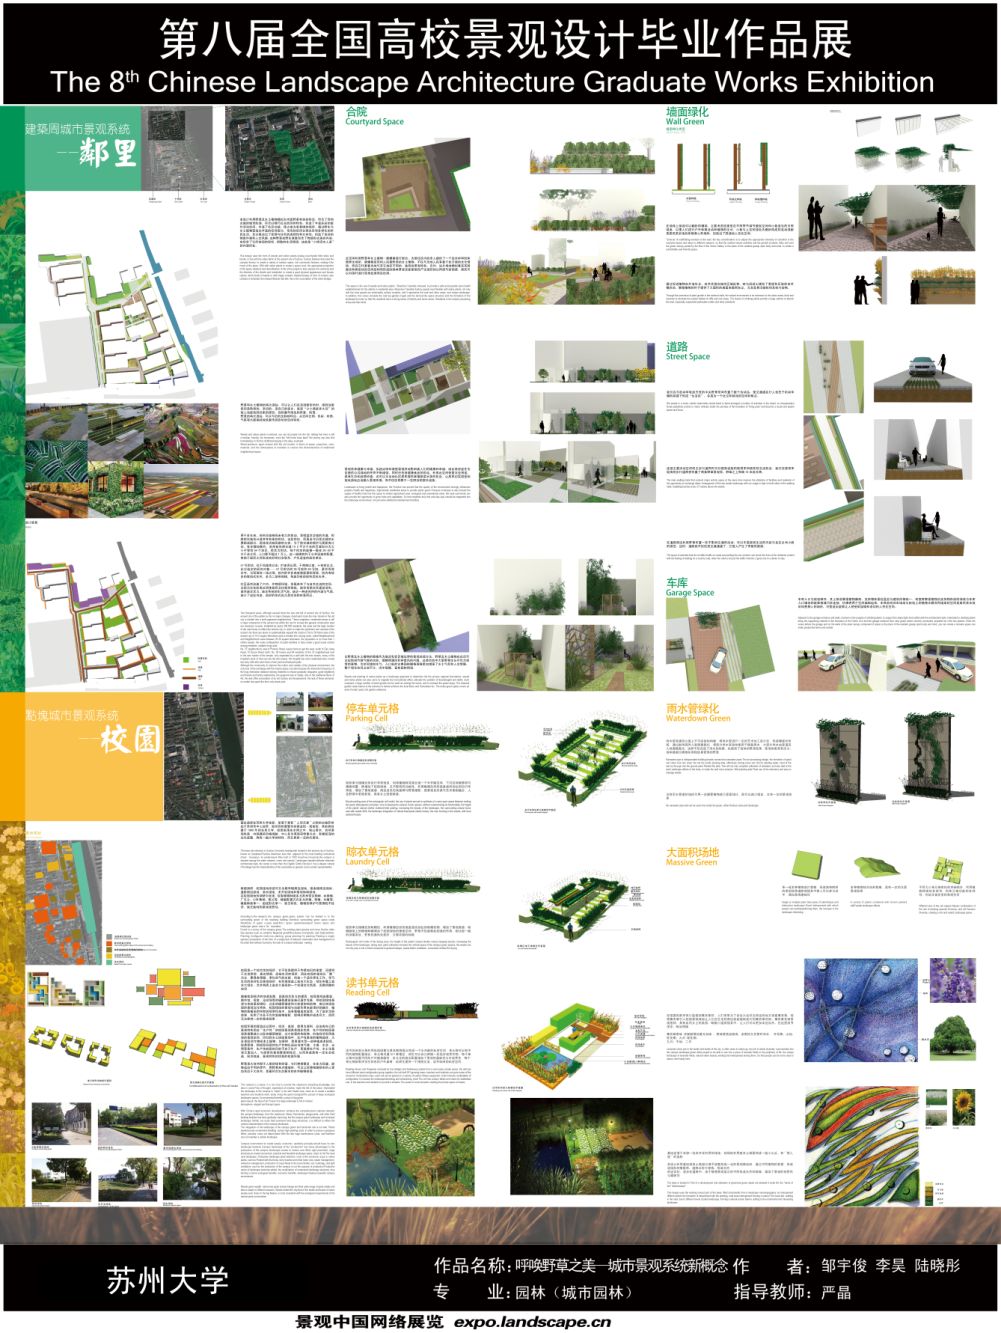 唤起野草之美—城市景观系统新概念-2